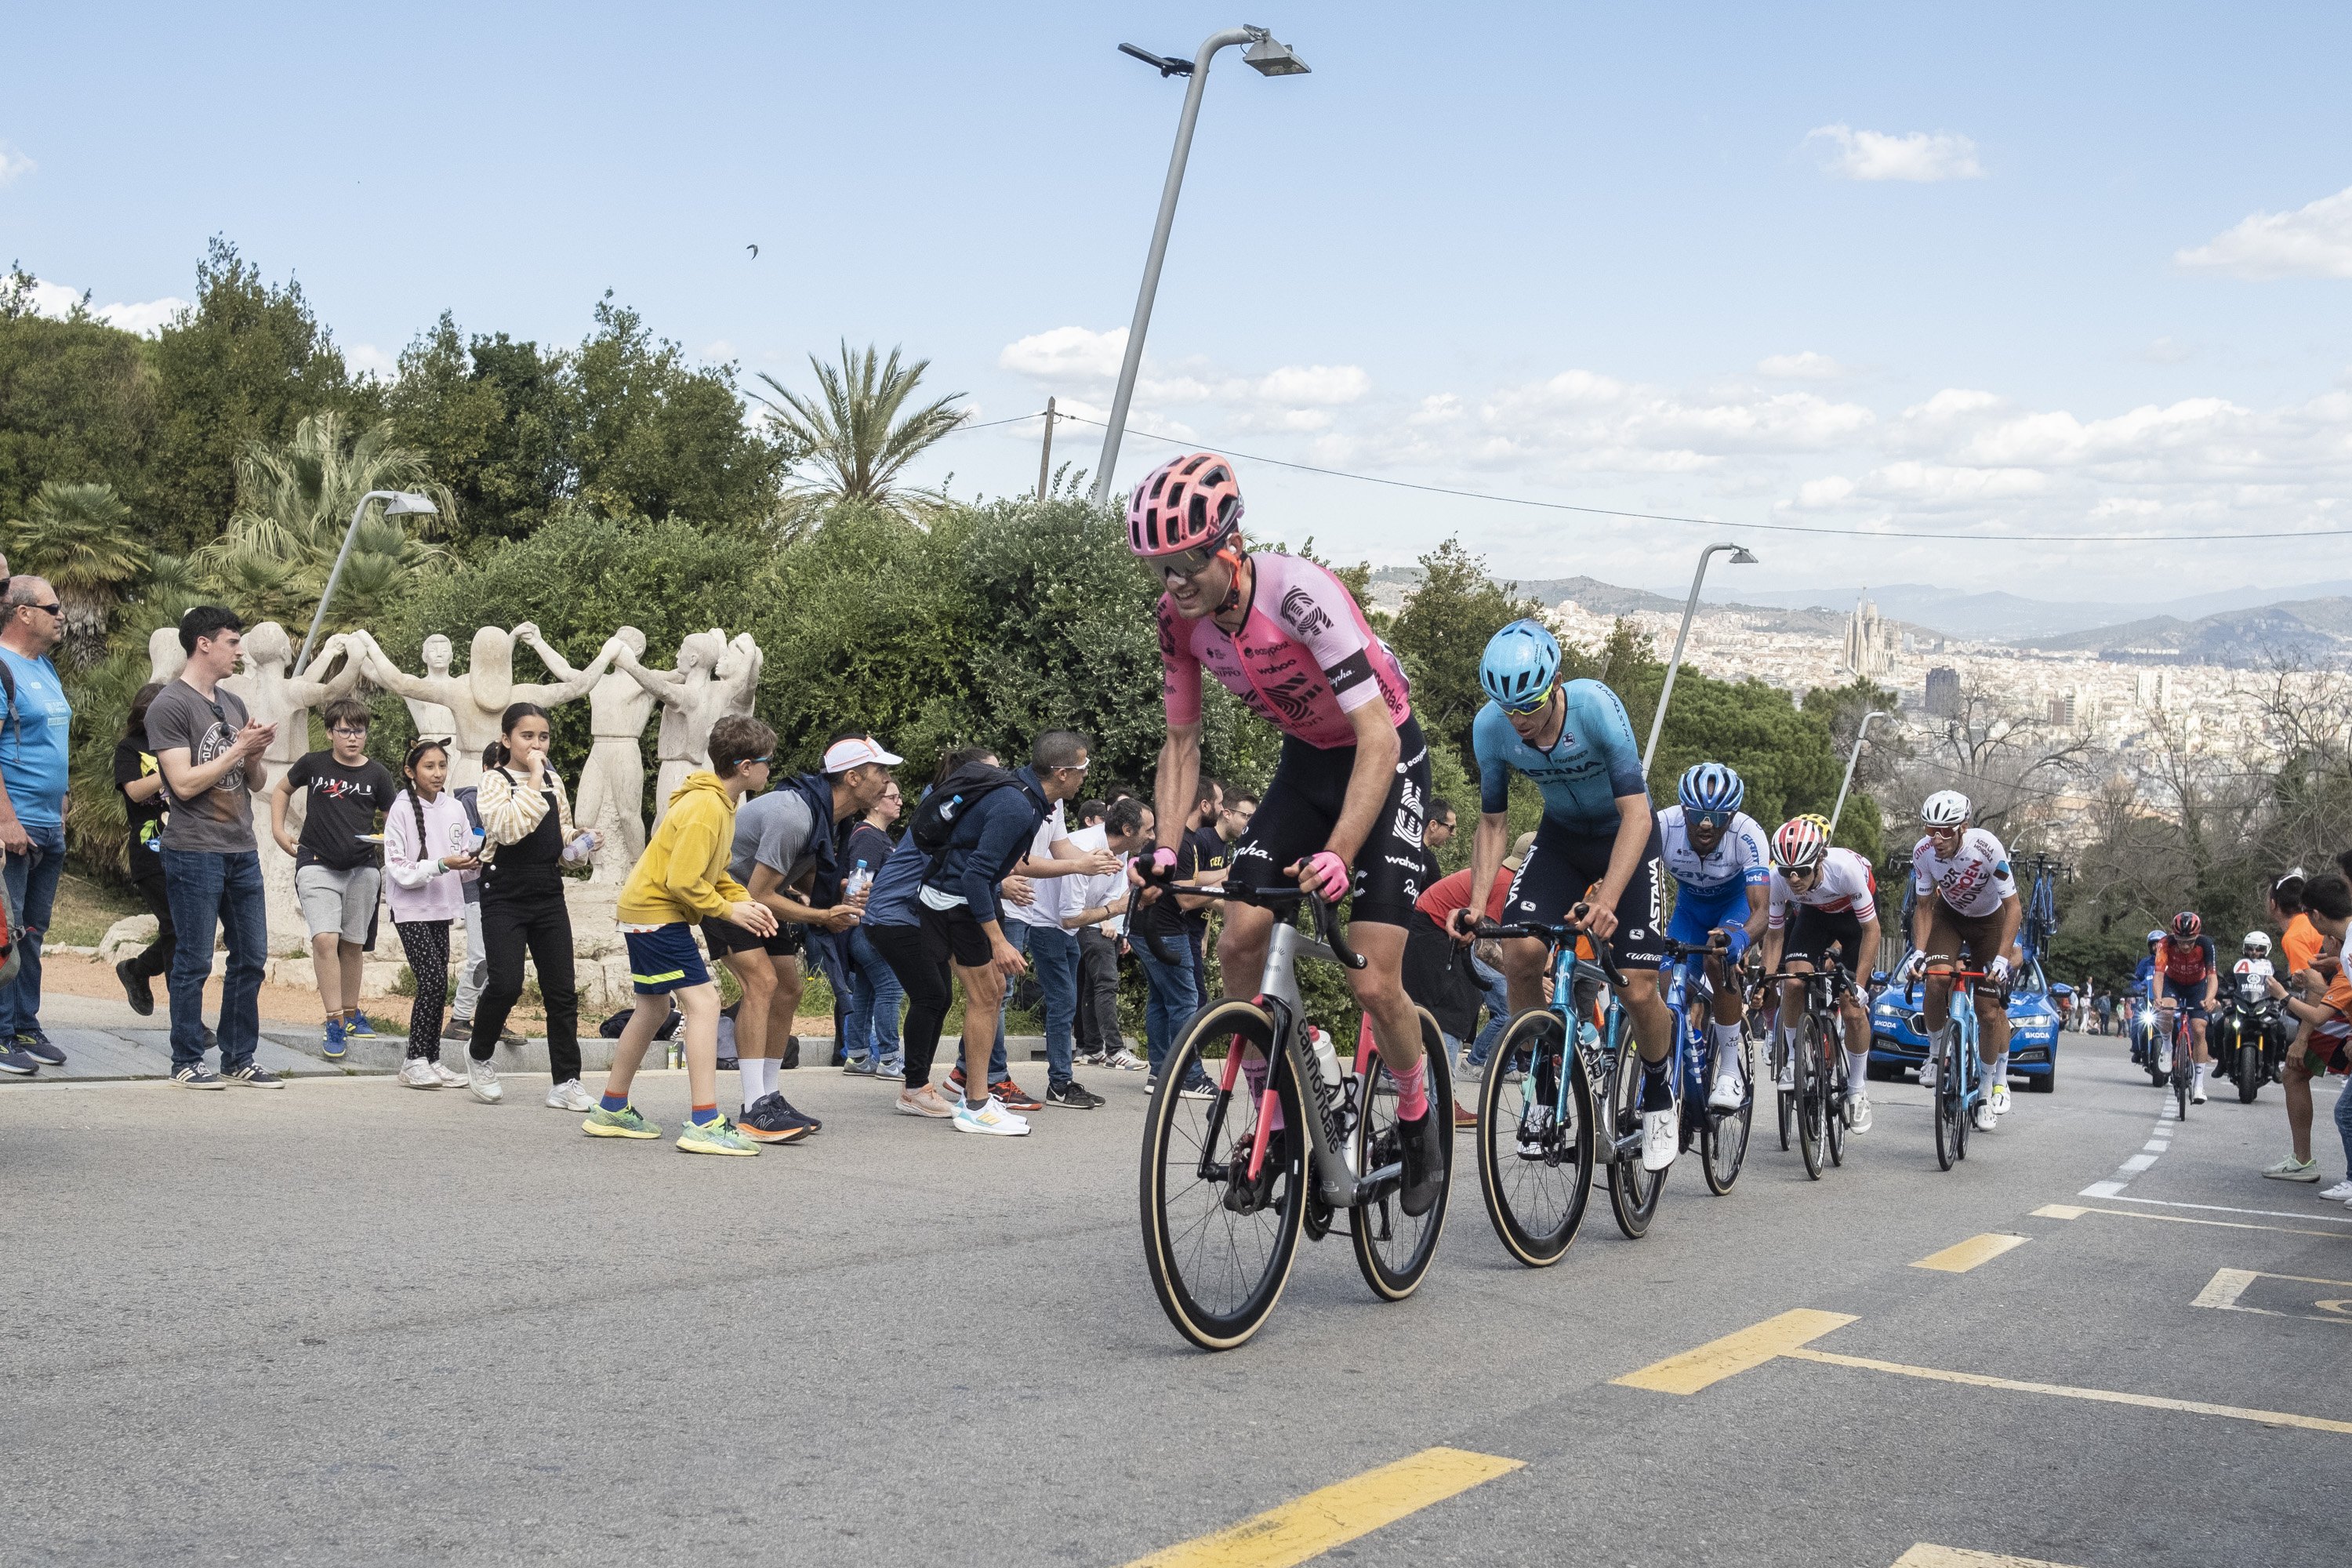 Arriba La Vuelta a Barcelona amb afectacions a la mobilitat durant tot el cap de setmana